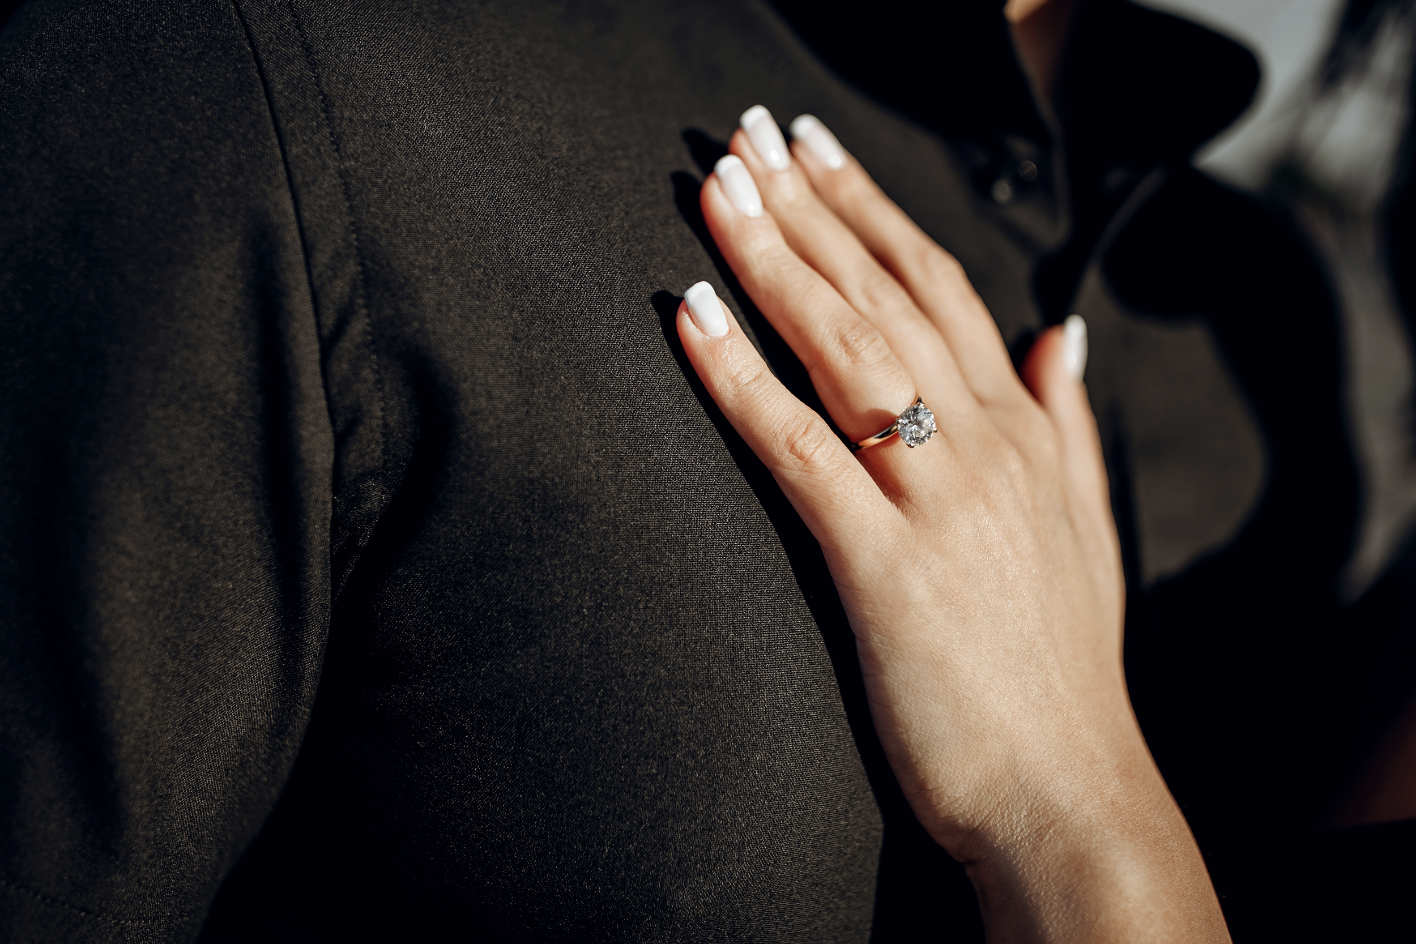 Die Hand einer Frau mit einem Ehering | Quelle: Shutterstock